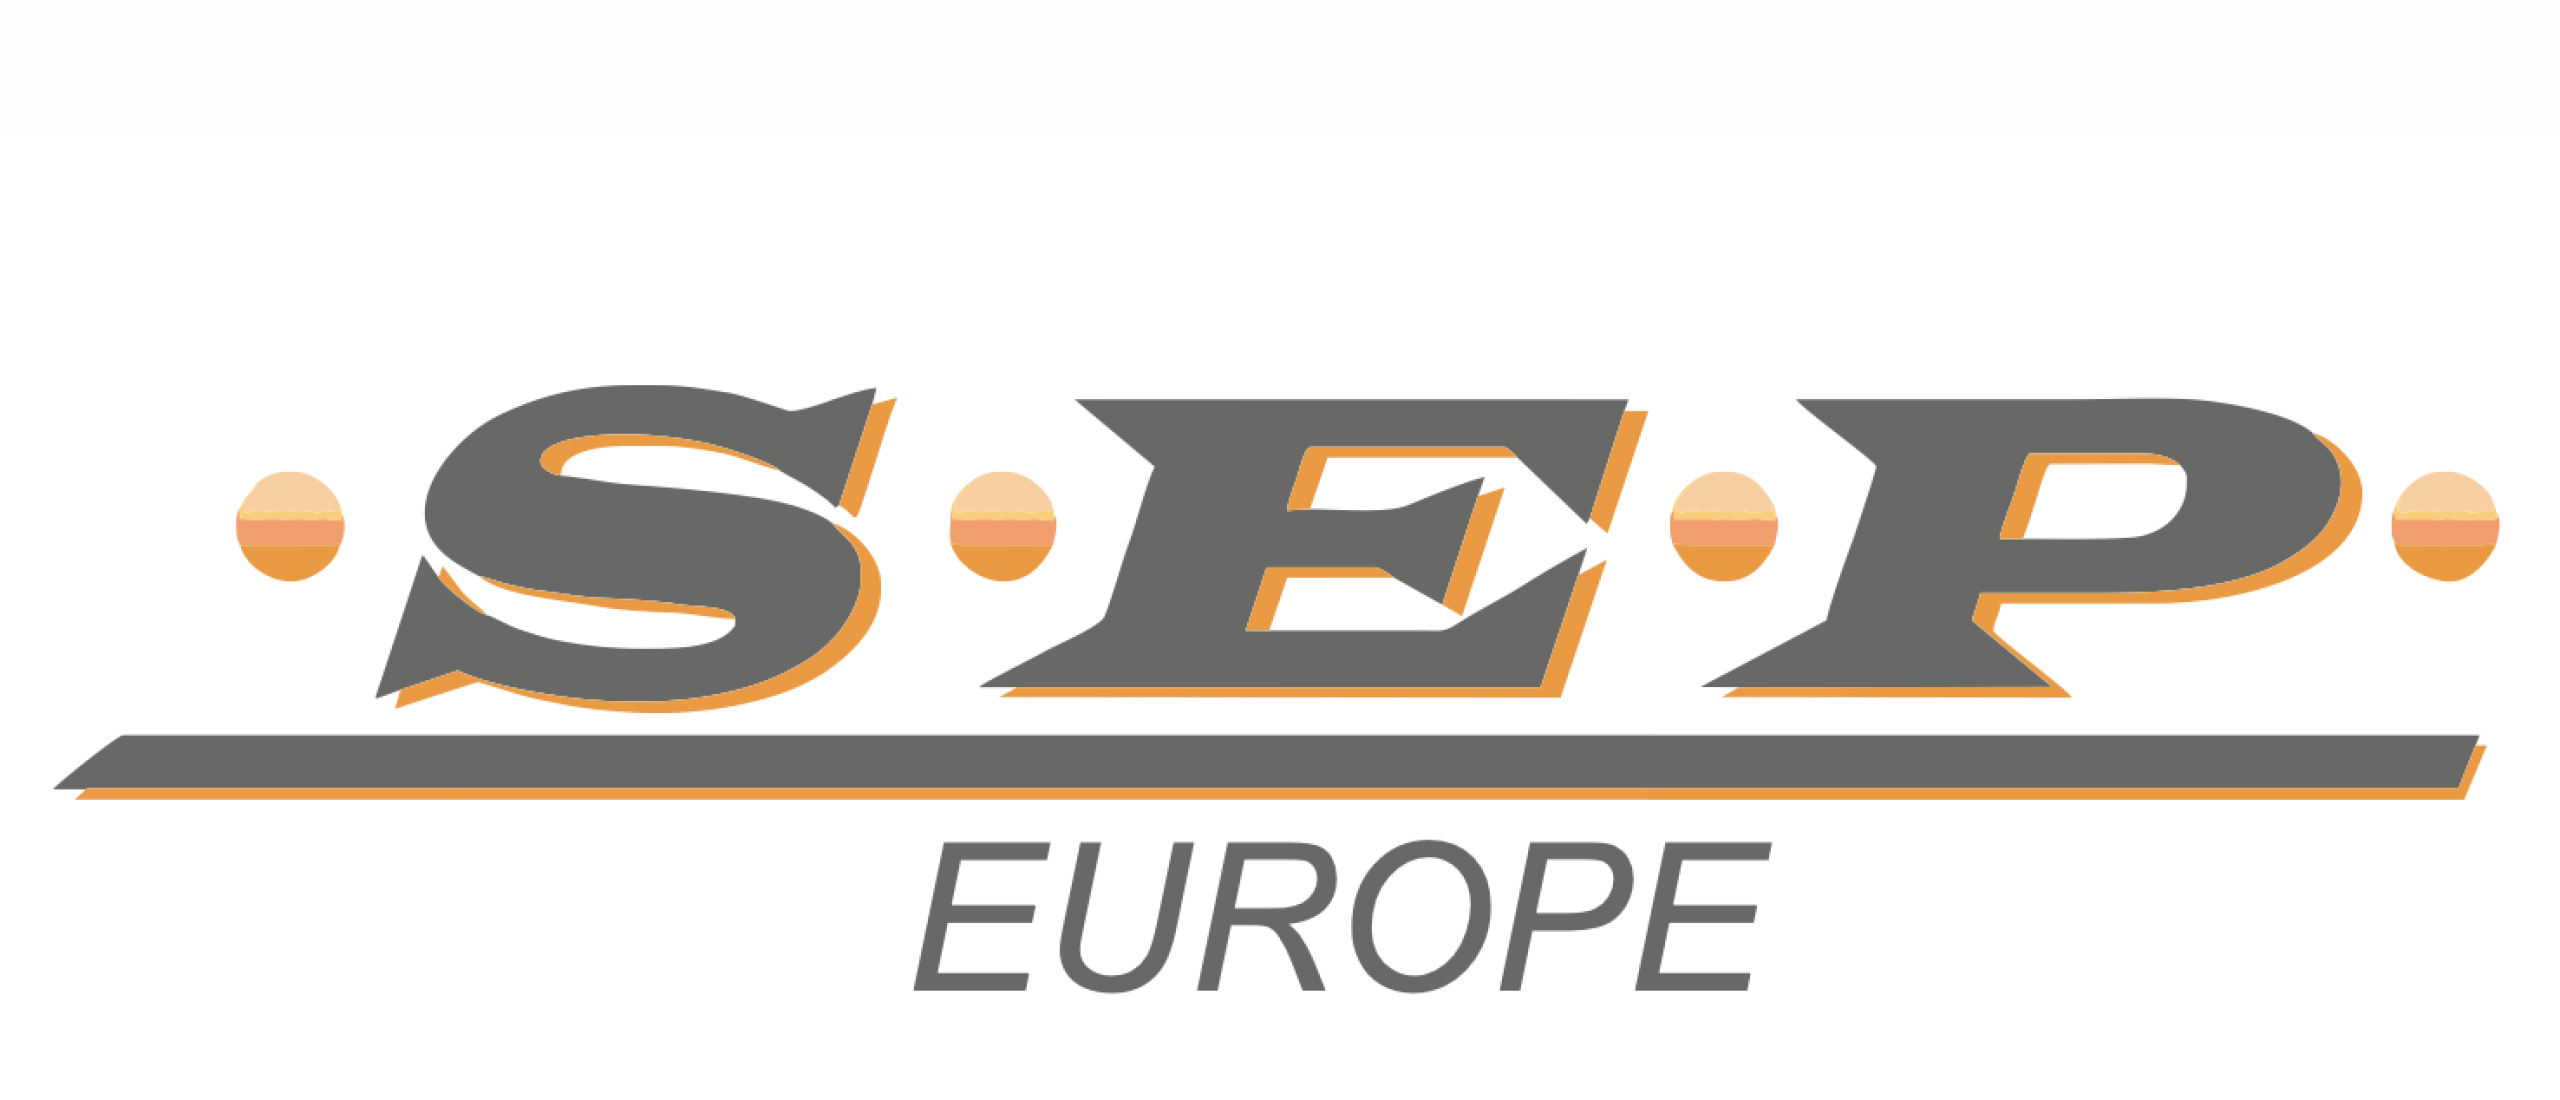 SEP Europe Elektrotechniek